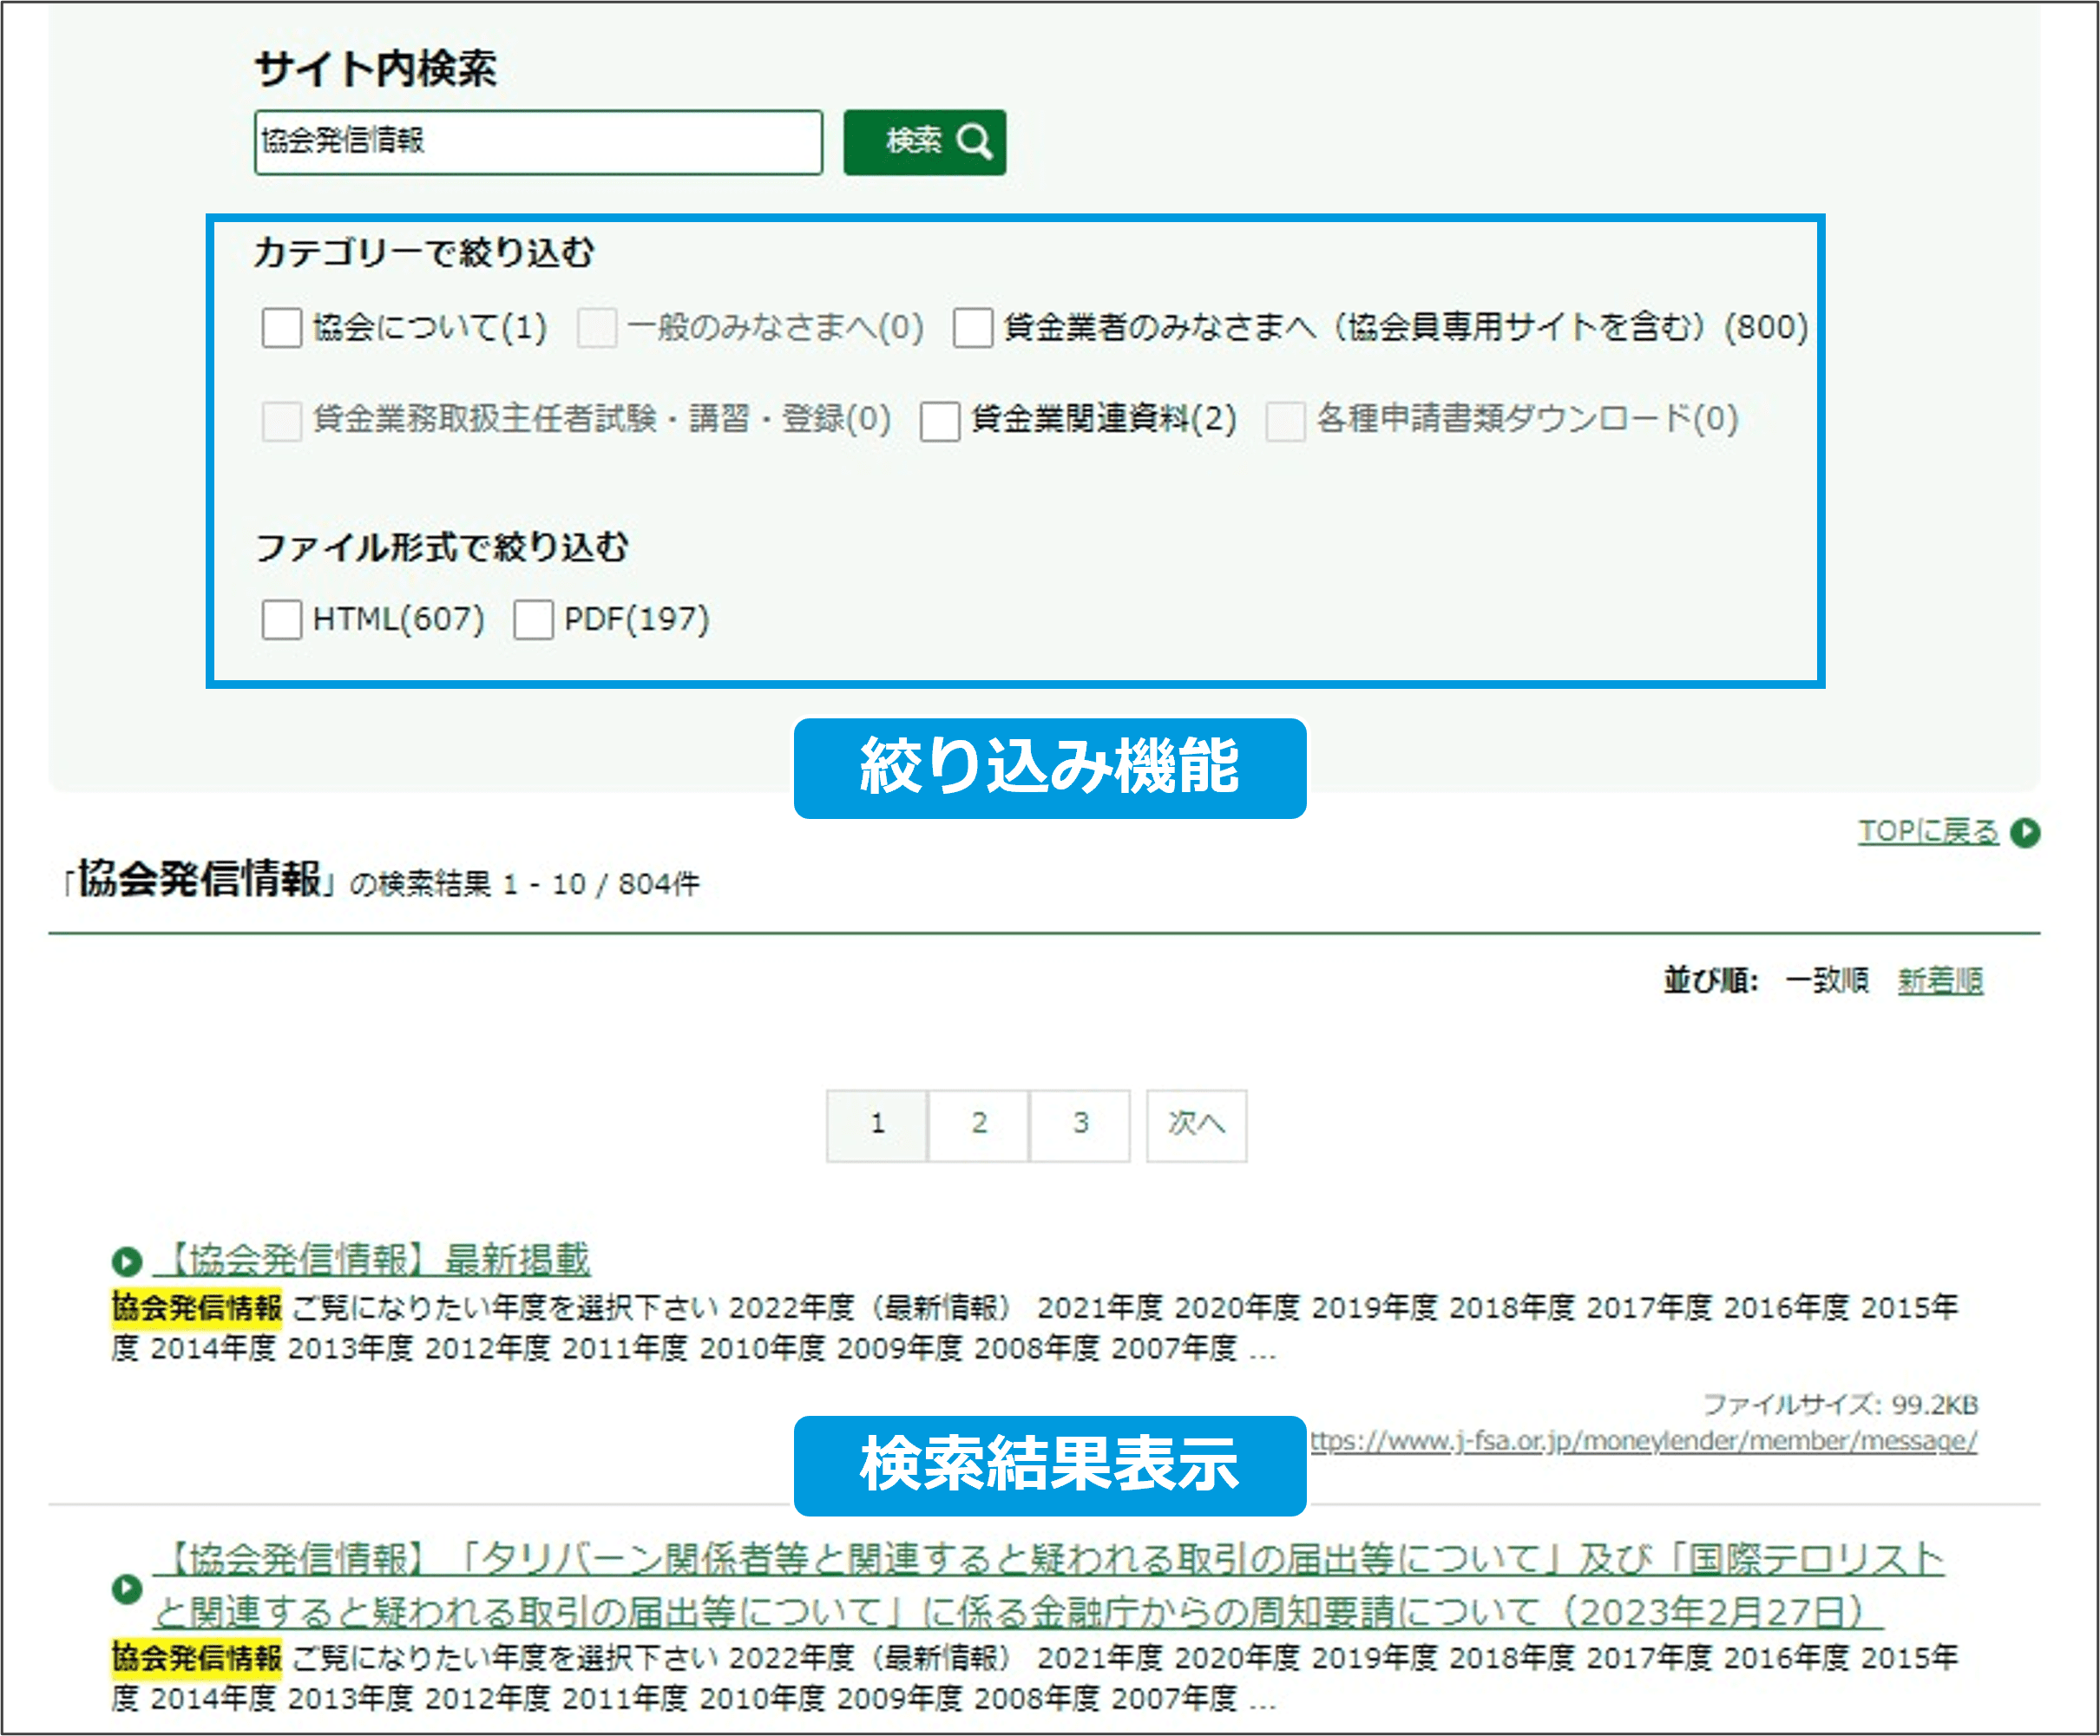 日本貸金業協会事例の検索結果表示